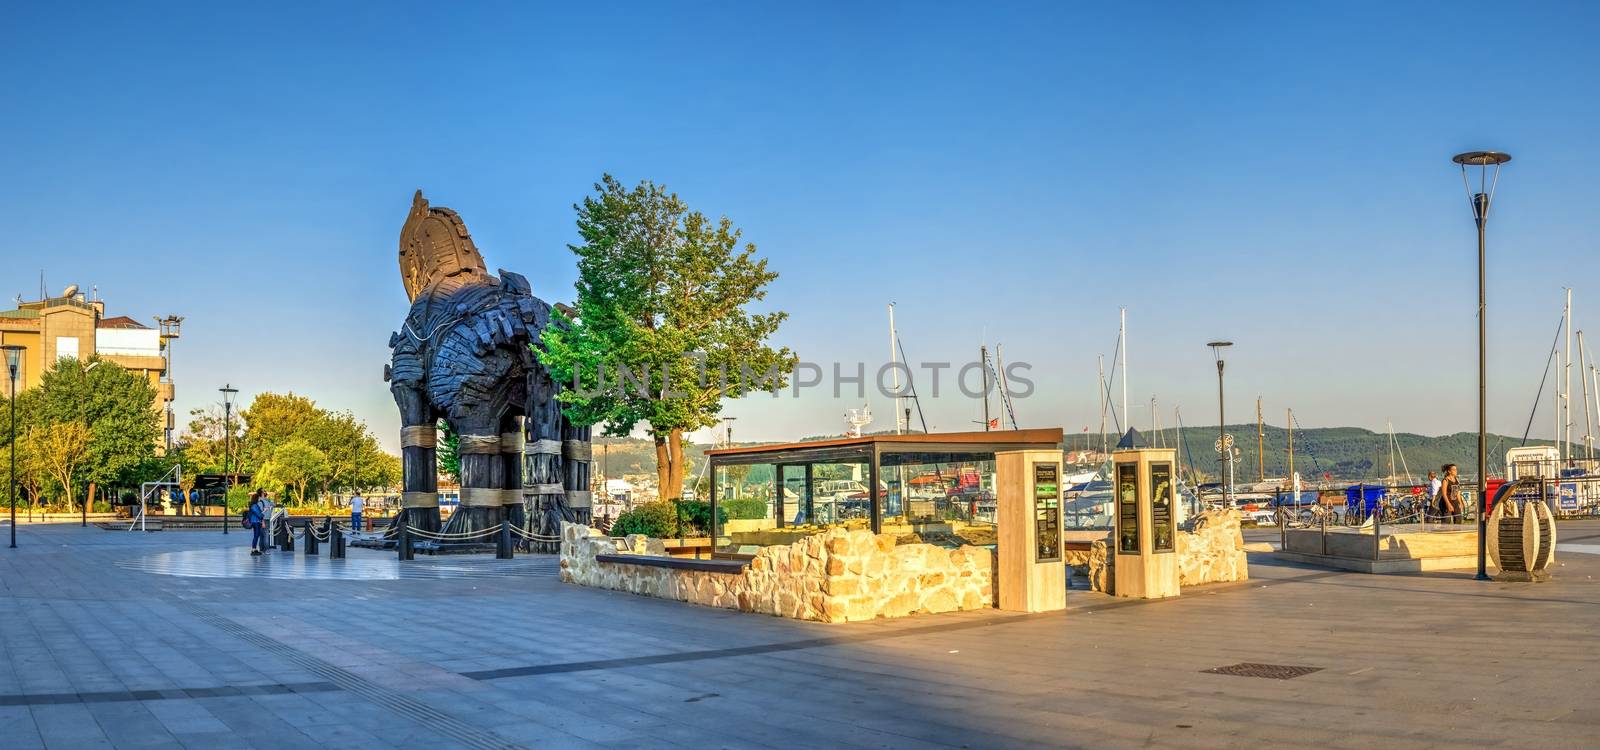 Troy Open Air Museum in Canakkale, Turkey by Multipedia